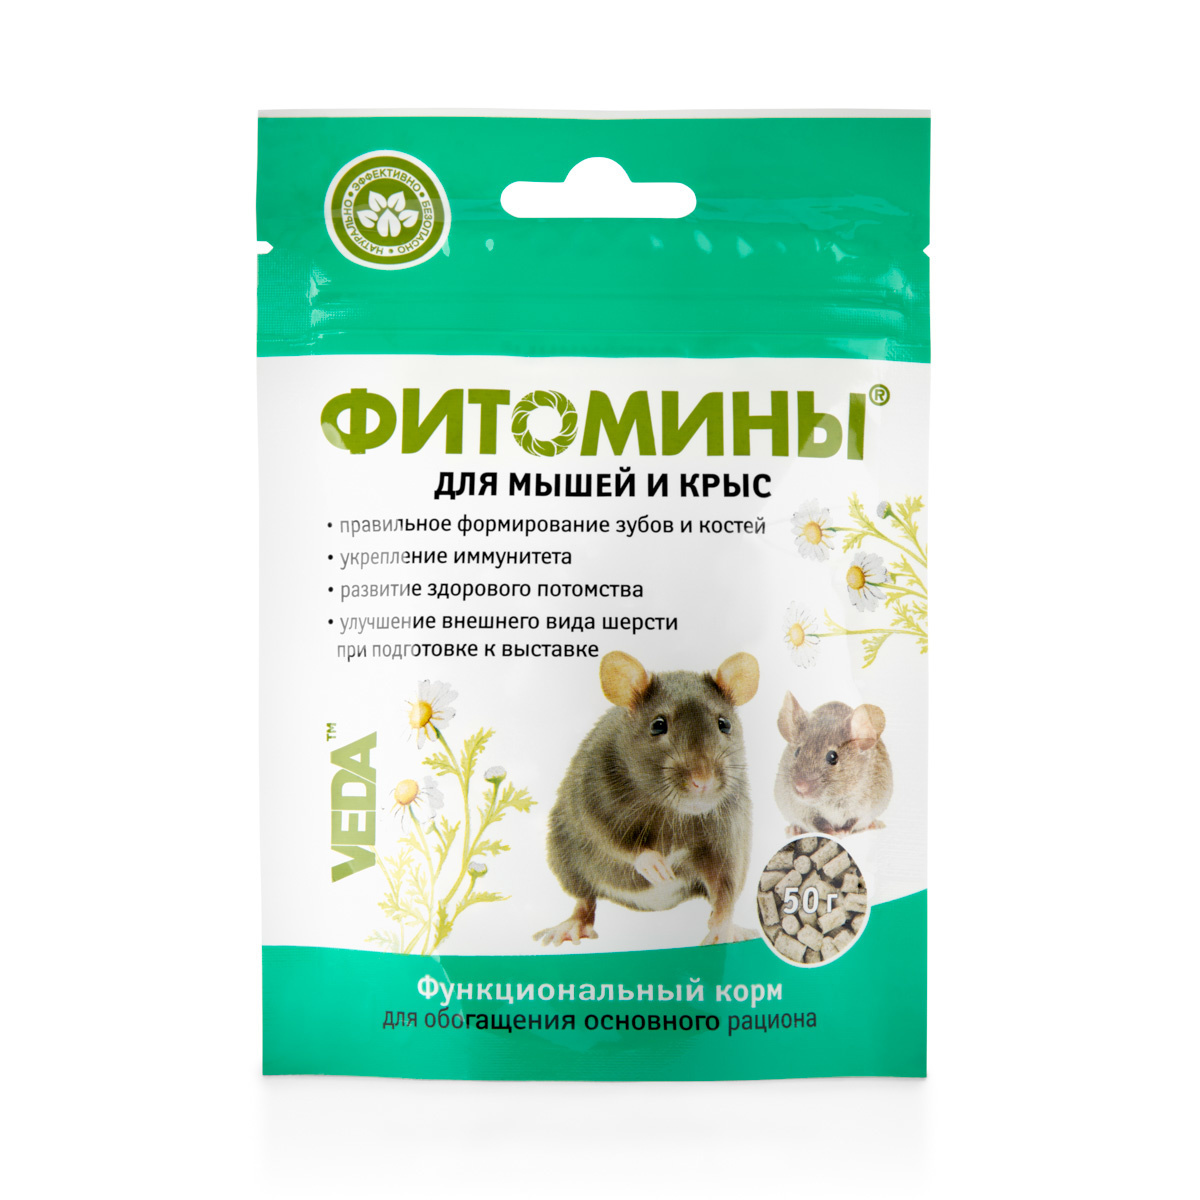 Веда Веда фитомины для мышей и крыс (50 г)